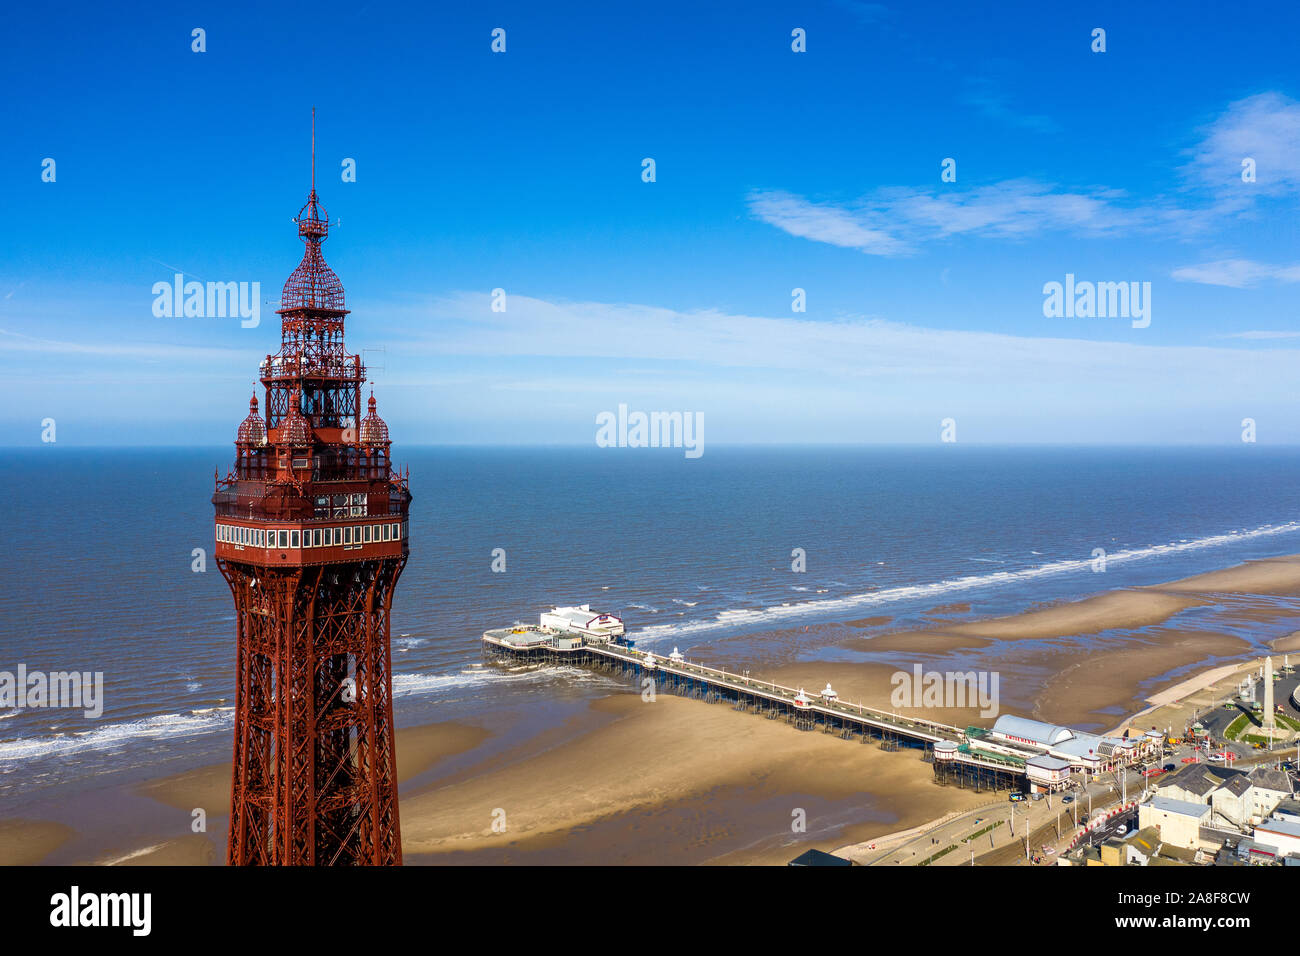 Vues aériennes de la Blackpool Tower dans l'une des stations balnéaires plus grand du Stunnig, paysages de la mer, et lui-même de la ville de Blackpool Banque D'Images